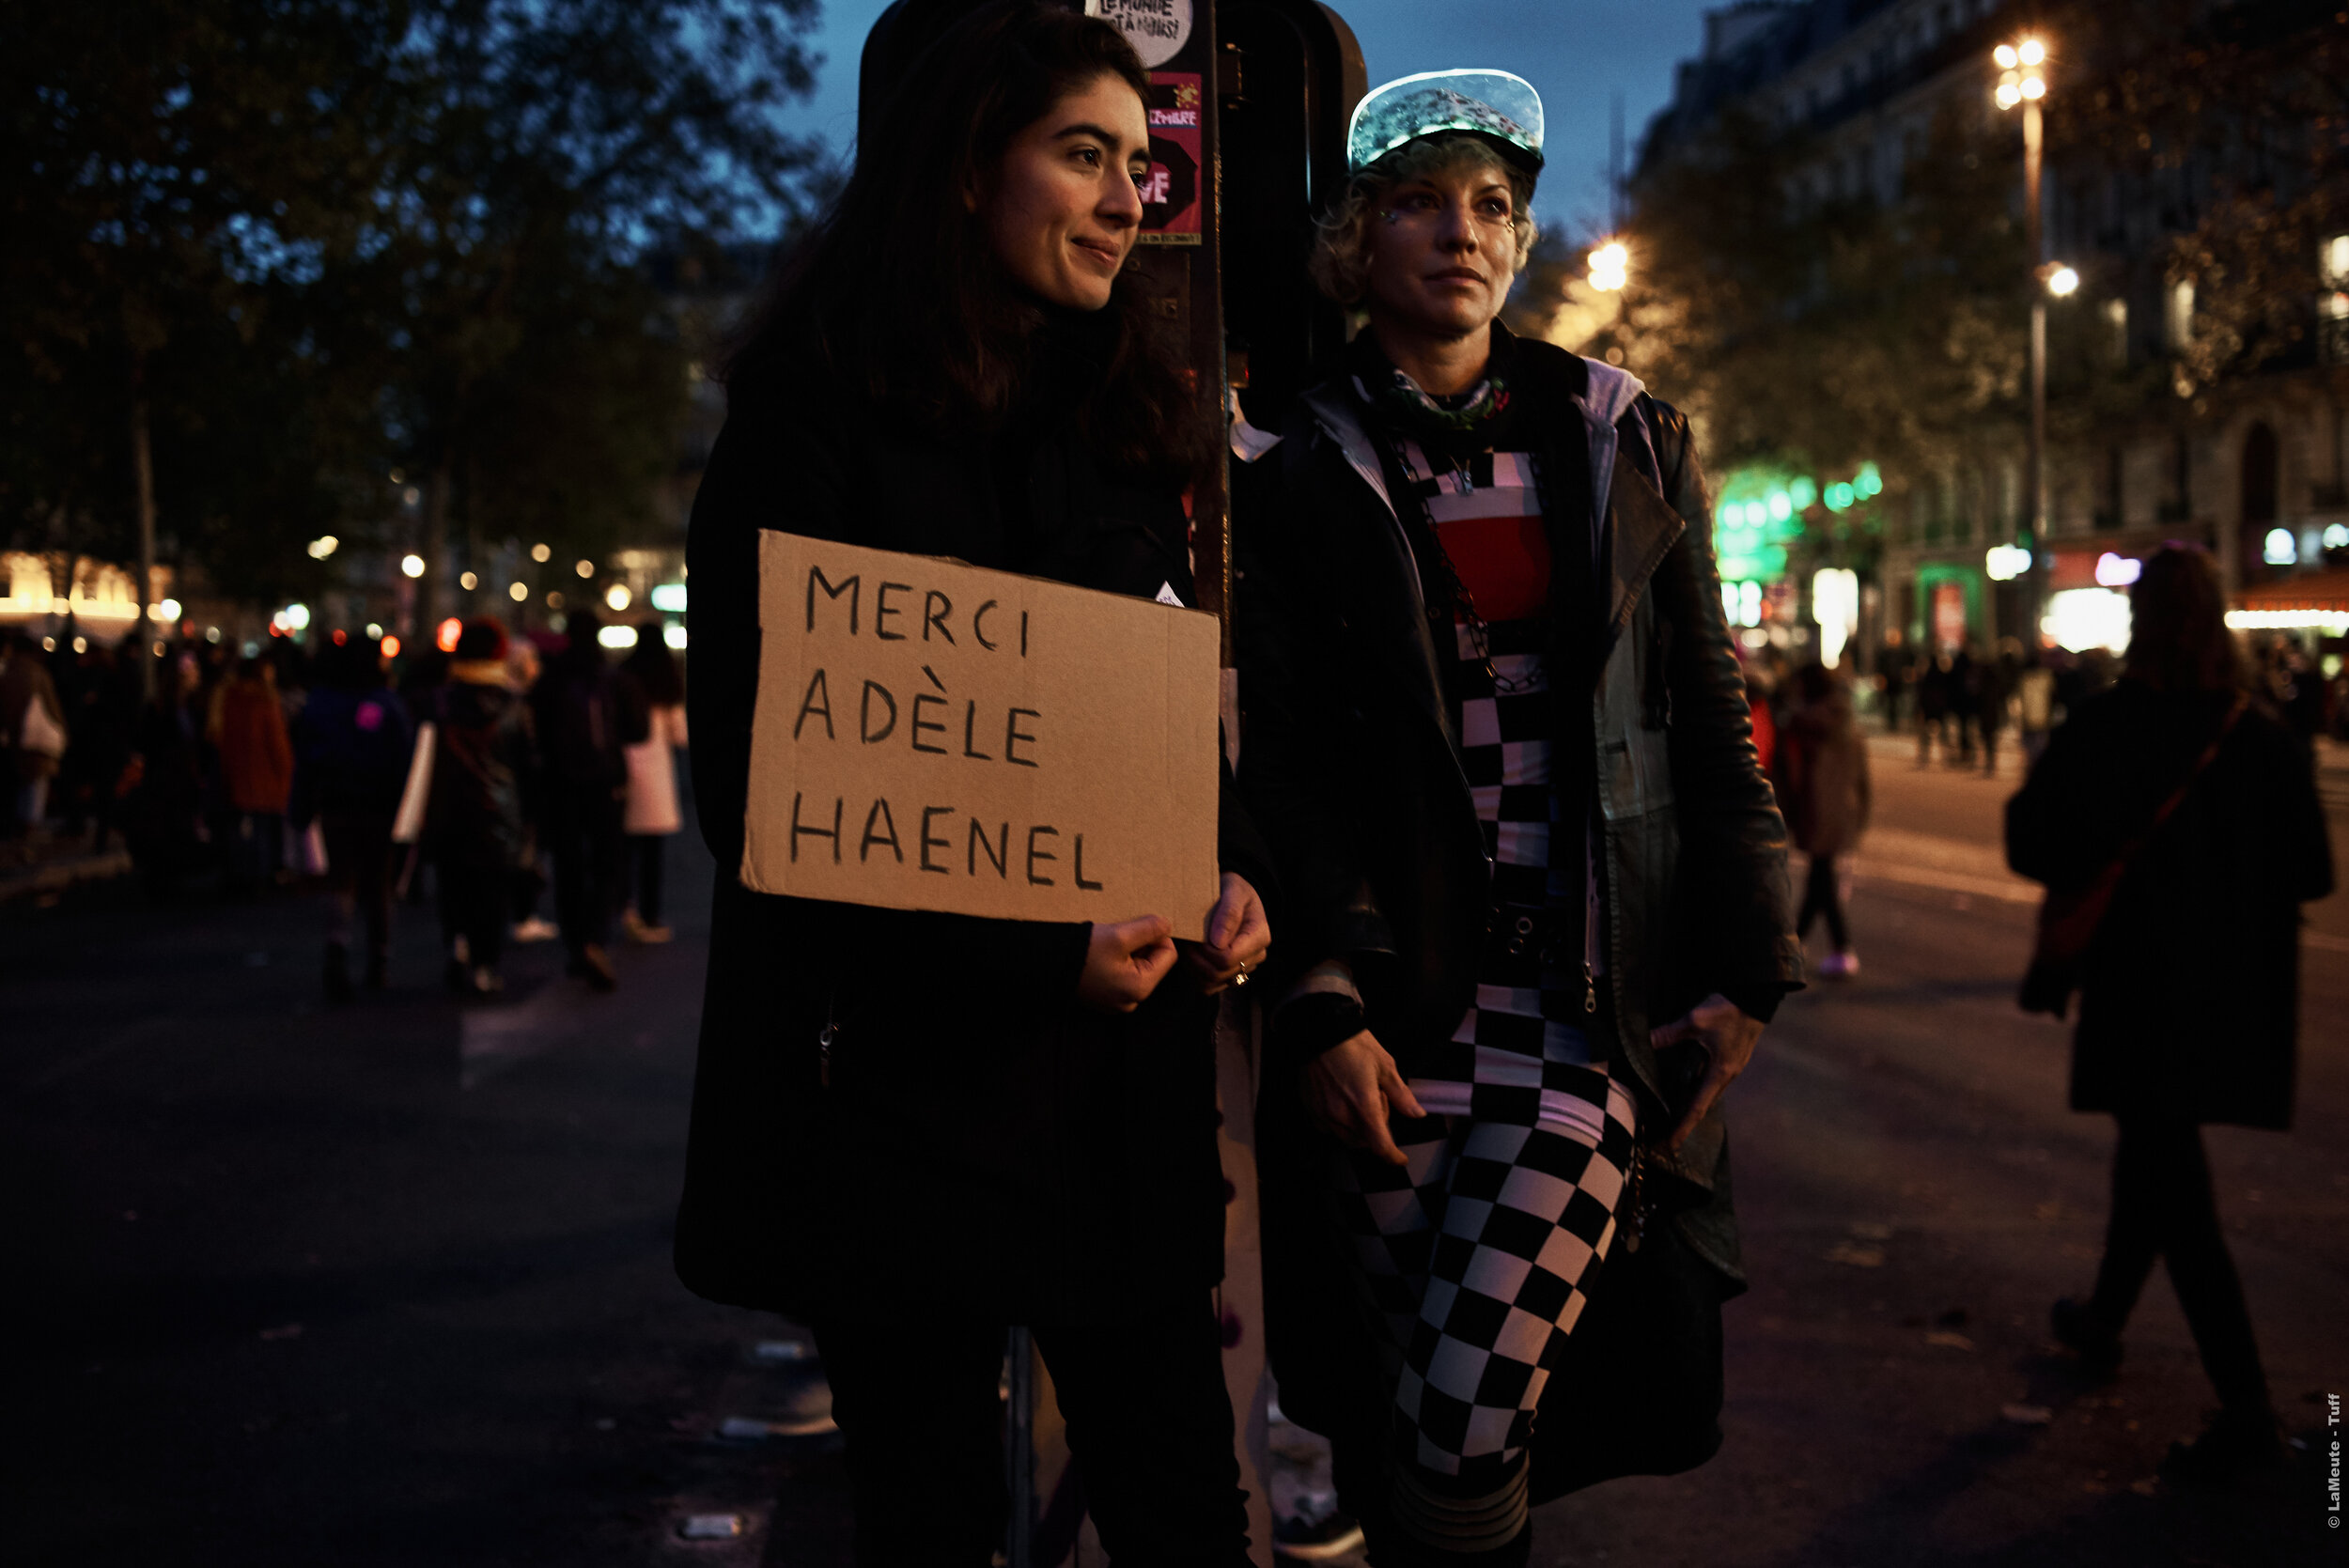  2 manifestant.e.s a1 République avec une pancarte de remerciement pour Adèle Haenel, actrice qui a récemment accusé Christophe Ruggia dans Médiapart de harcèlement sexuel et attouchements alors qu’elle était âgée entre 12 et 15  ans. 